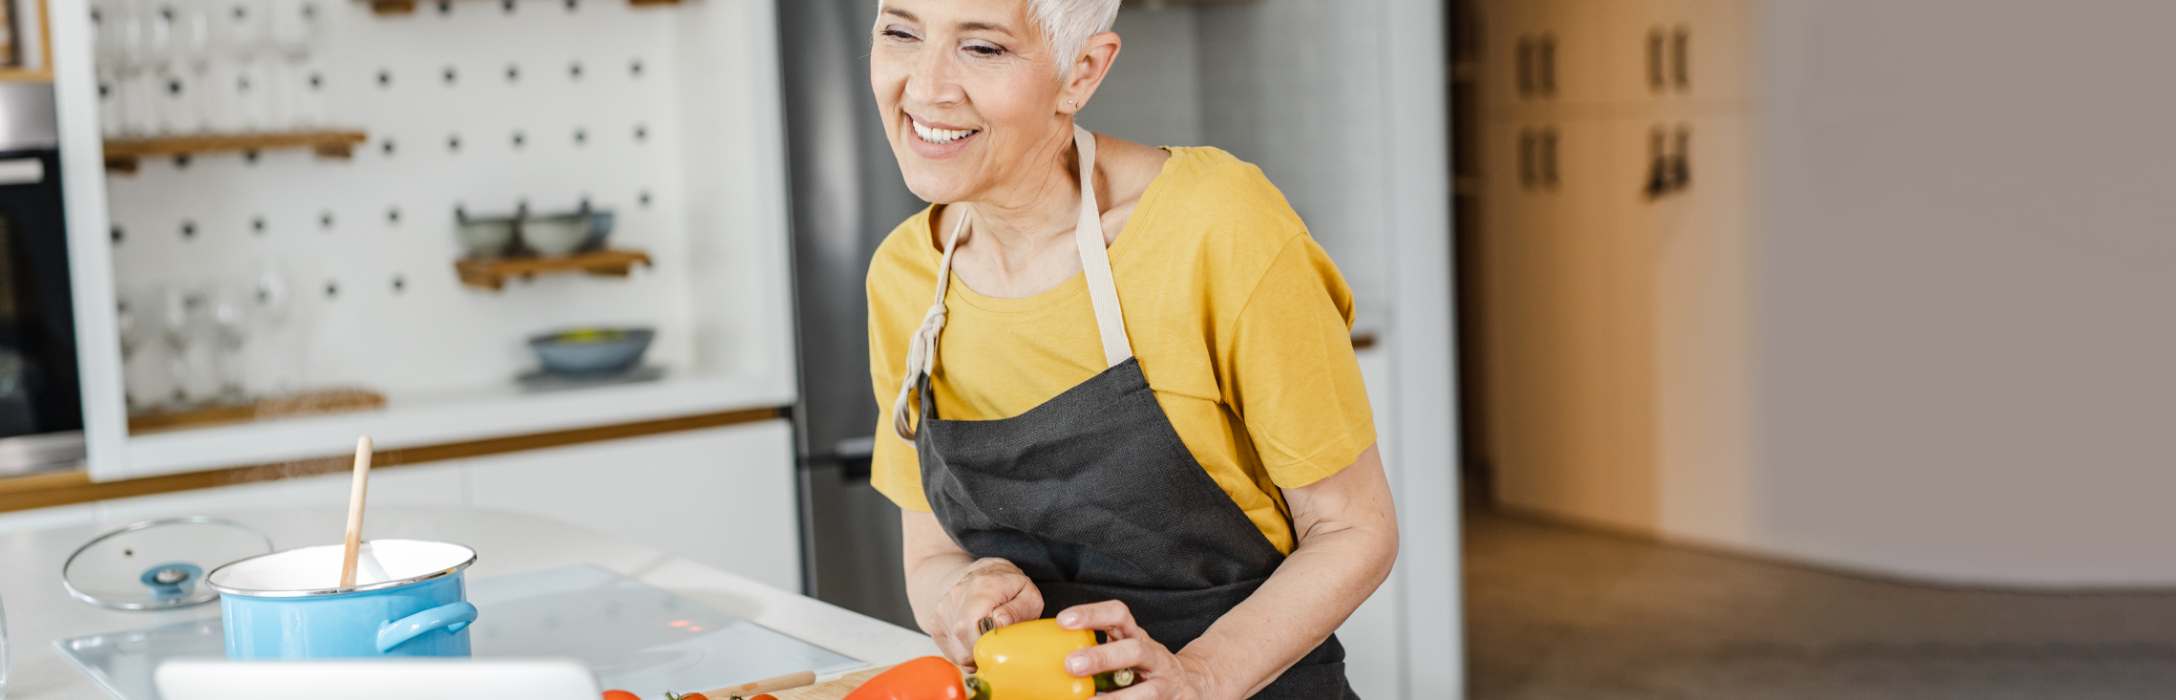 Mulher sorridente a cozinhar de forma saudável sem sal